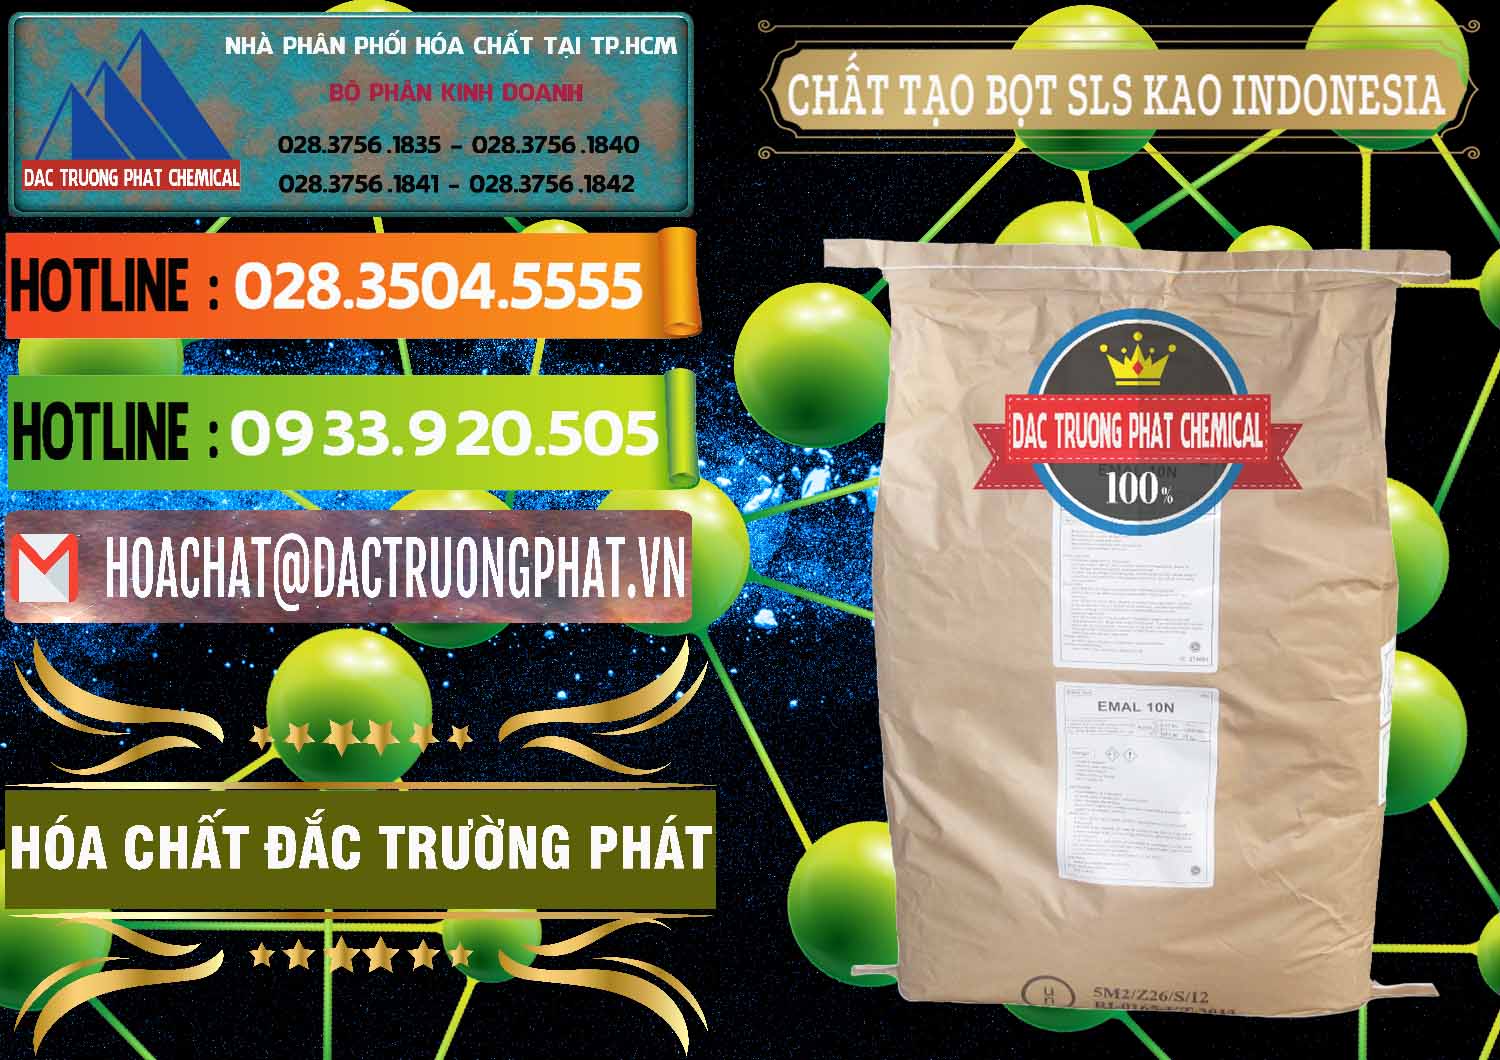 Cung cấp _ bán Chất Tạo Bọt SLS - Sodium Lauryl Sulfate EMAL 10N KAO Indonesia - 0047 - Cty bán _ cung cấp hóa chất tại TP.HCM - cungcaphoachat.com.vn